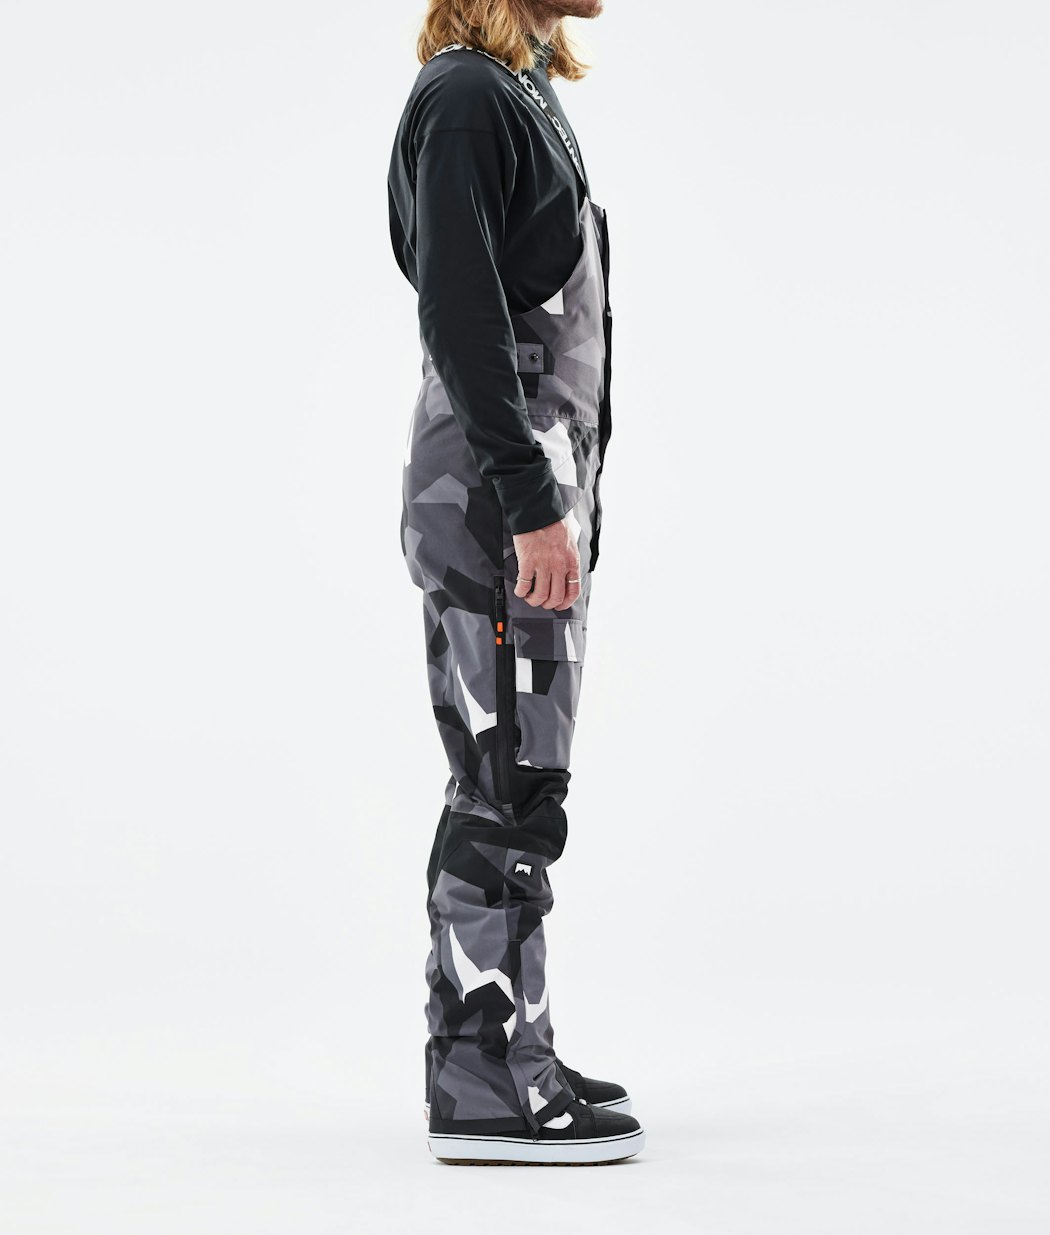 Fawk 2021 Snowboard Pants Men Arctic Camo/Black